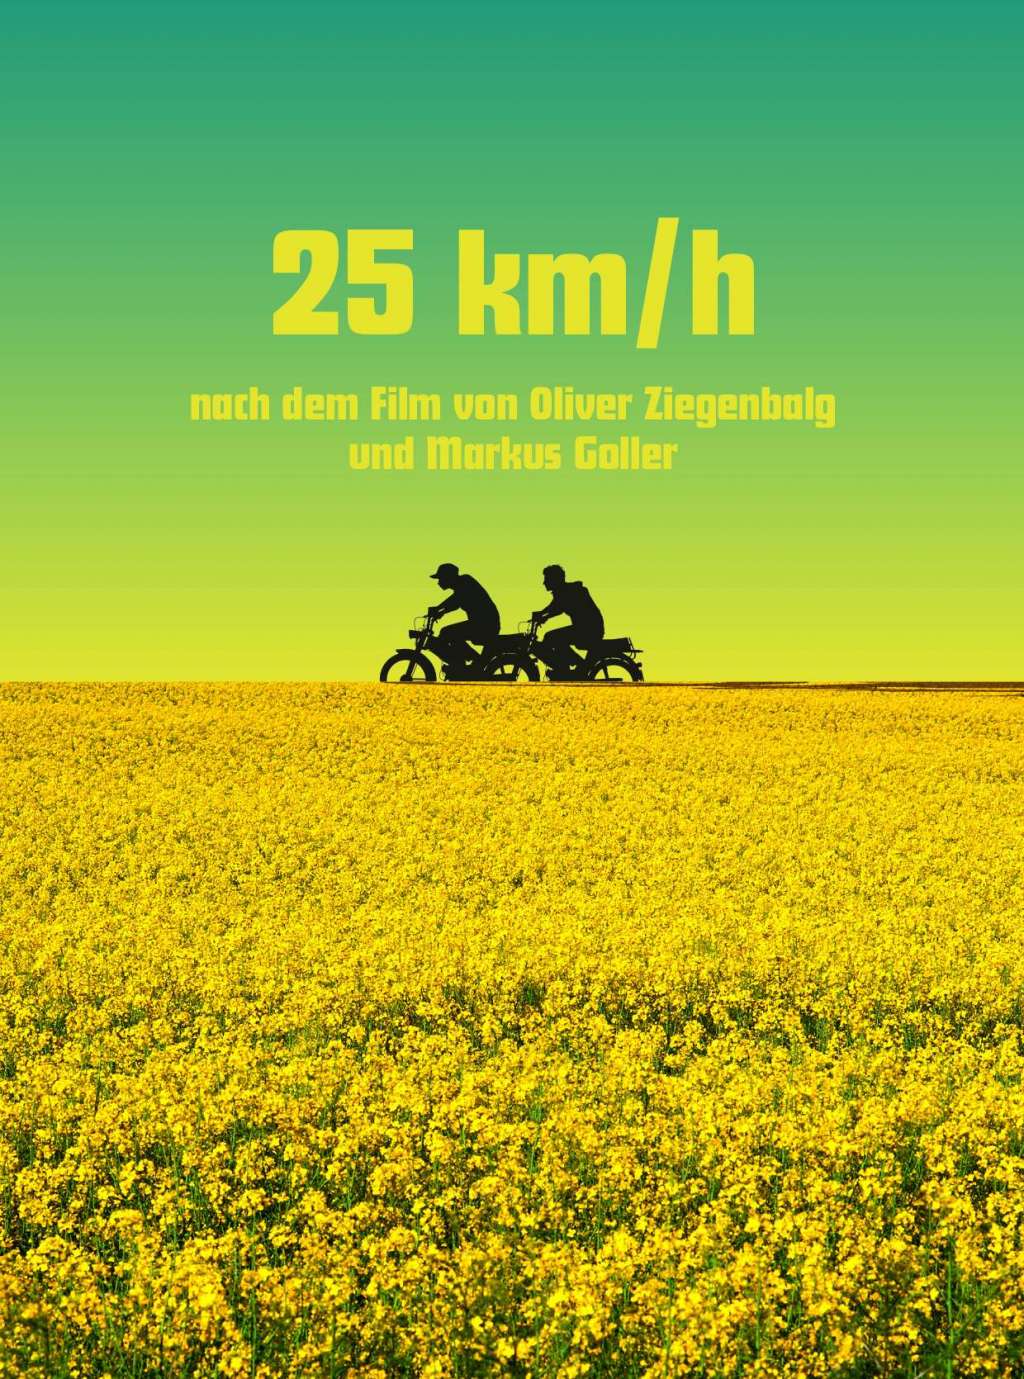 25 KM/H - Komödie nach einem Drehbuch von Oliver Ziegenbalg - VVV Nordhorn  e.V.